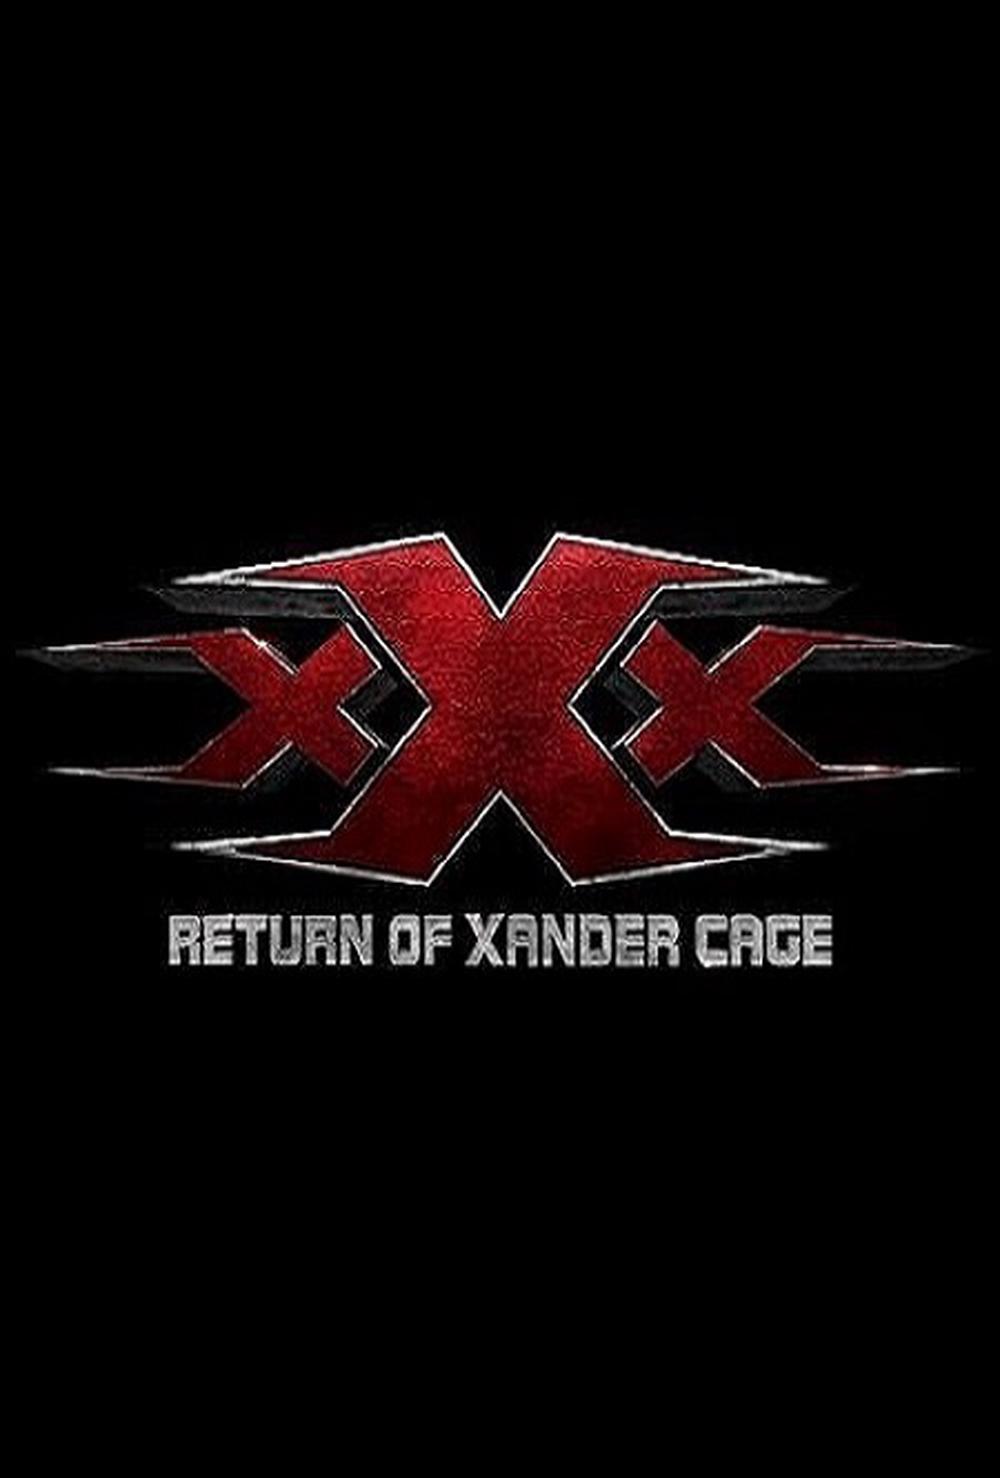 Xxx Review 53